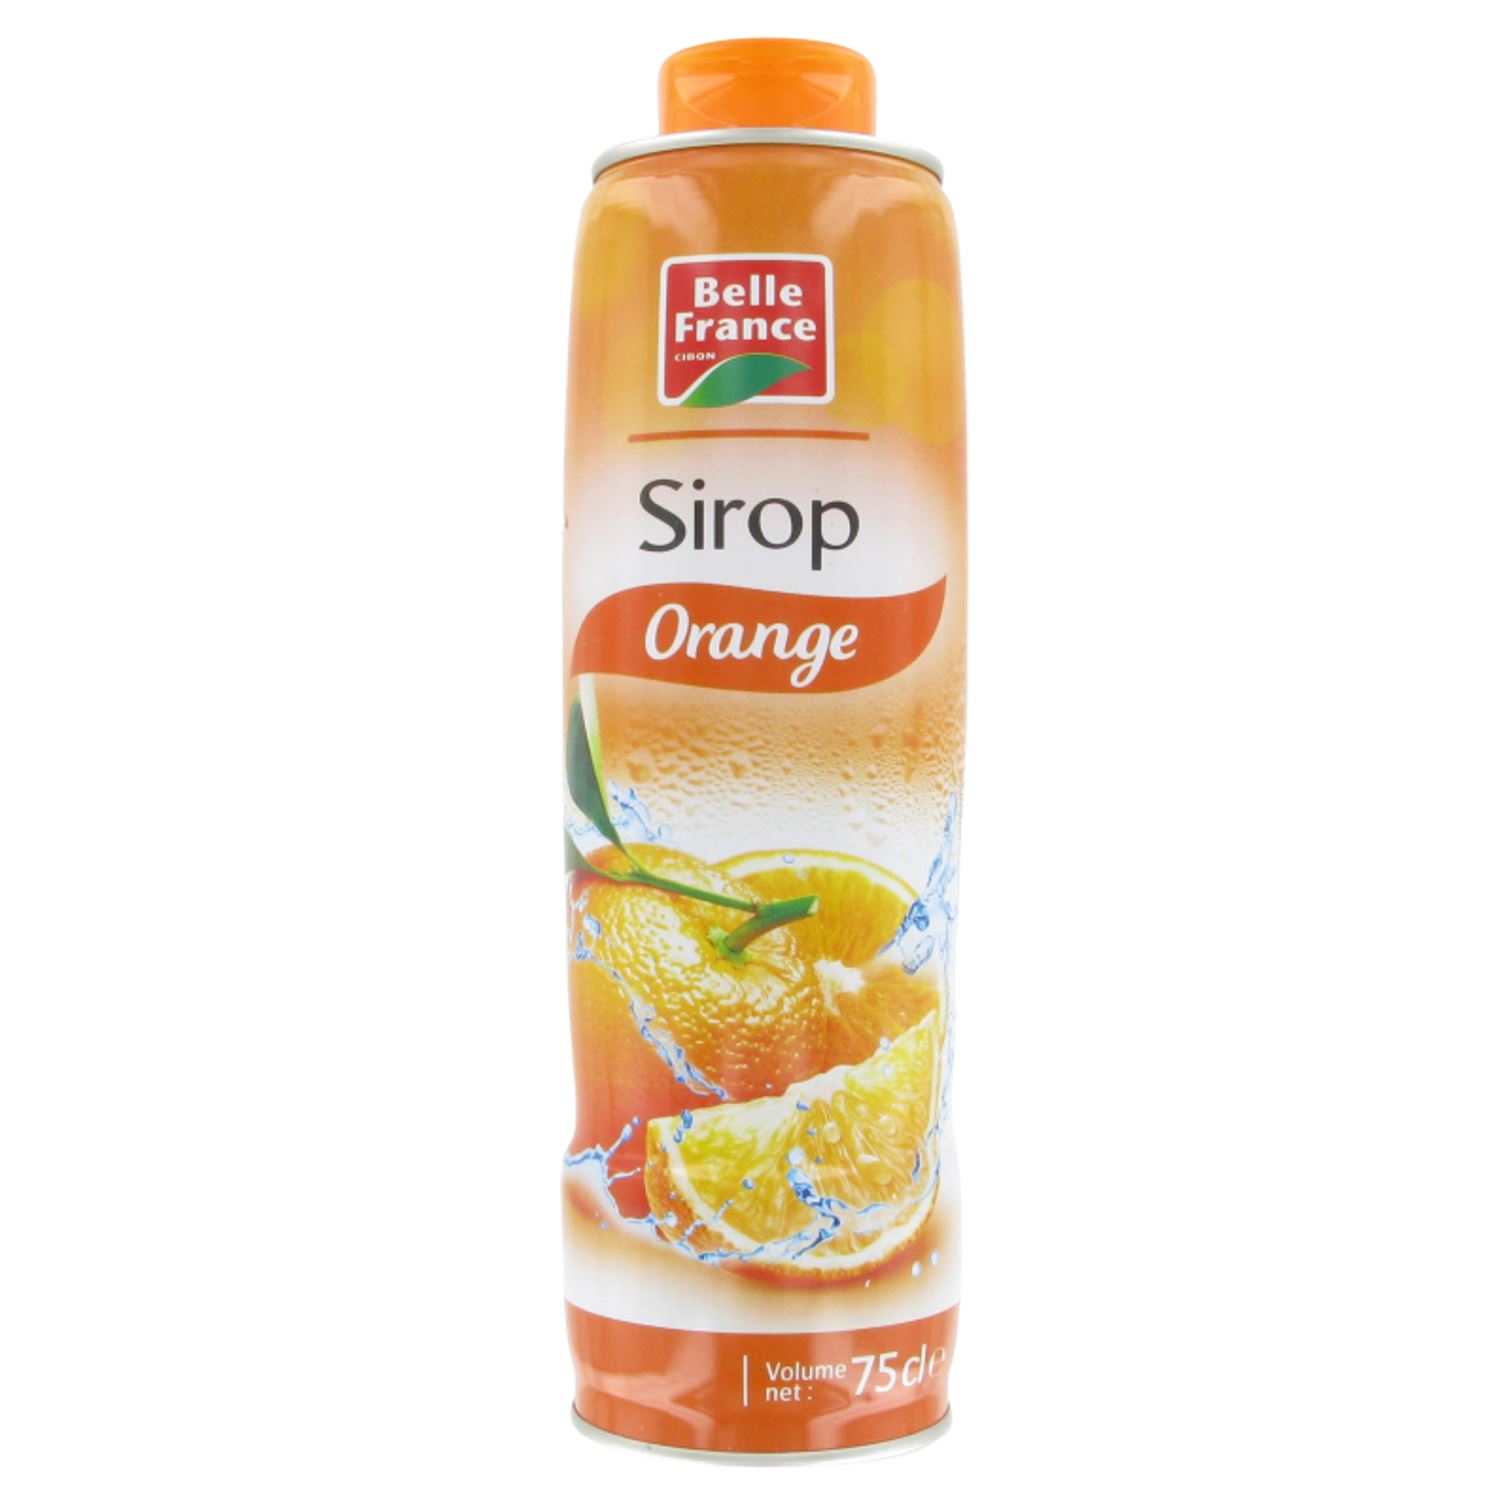 Sirop d orange